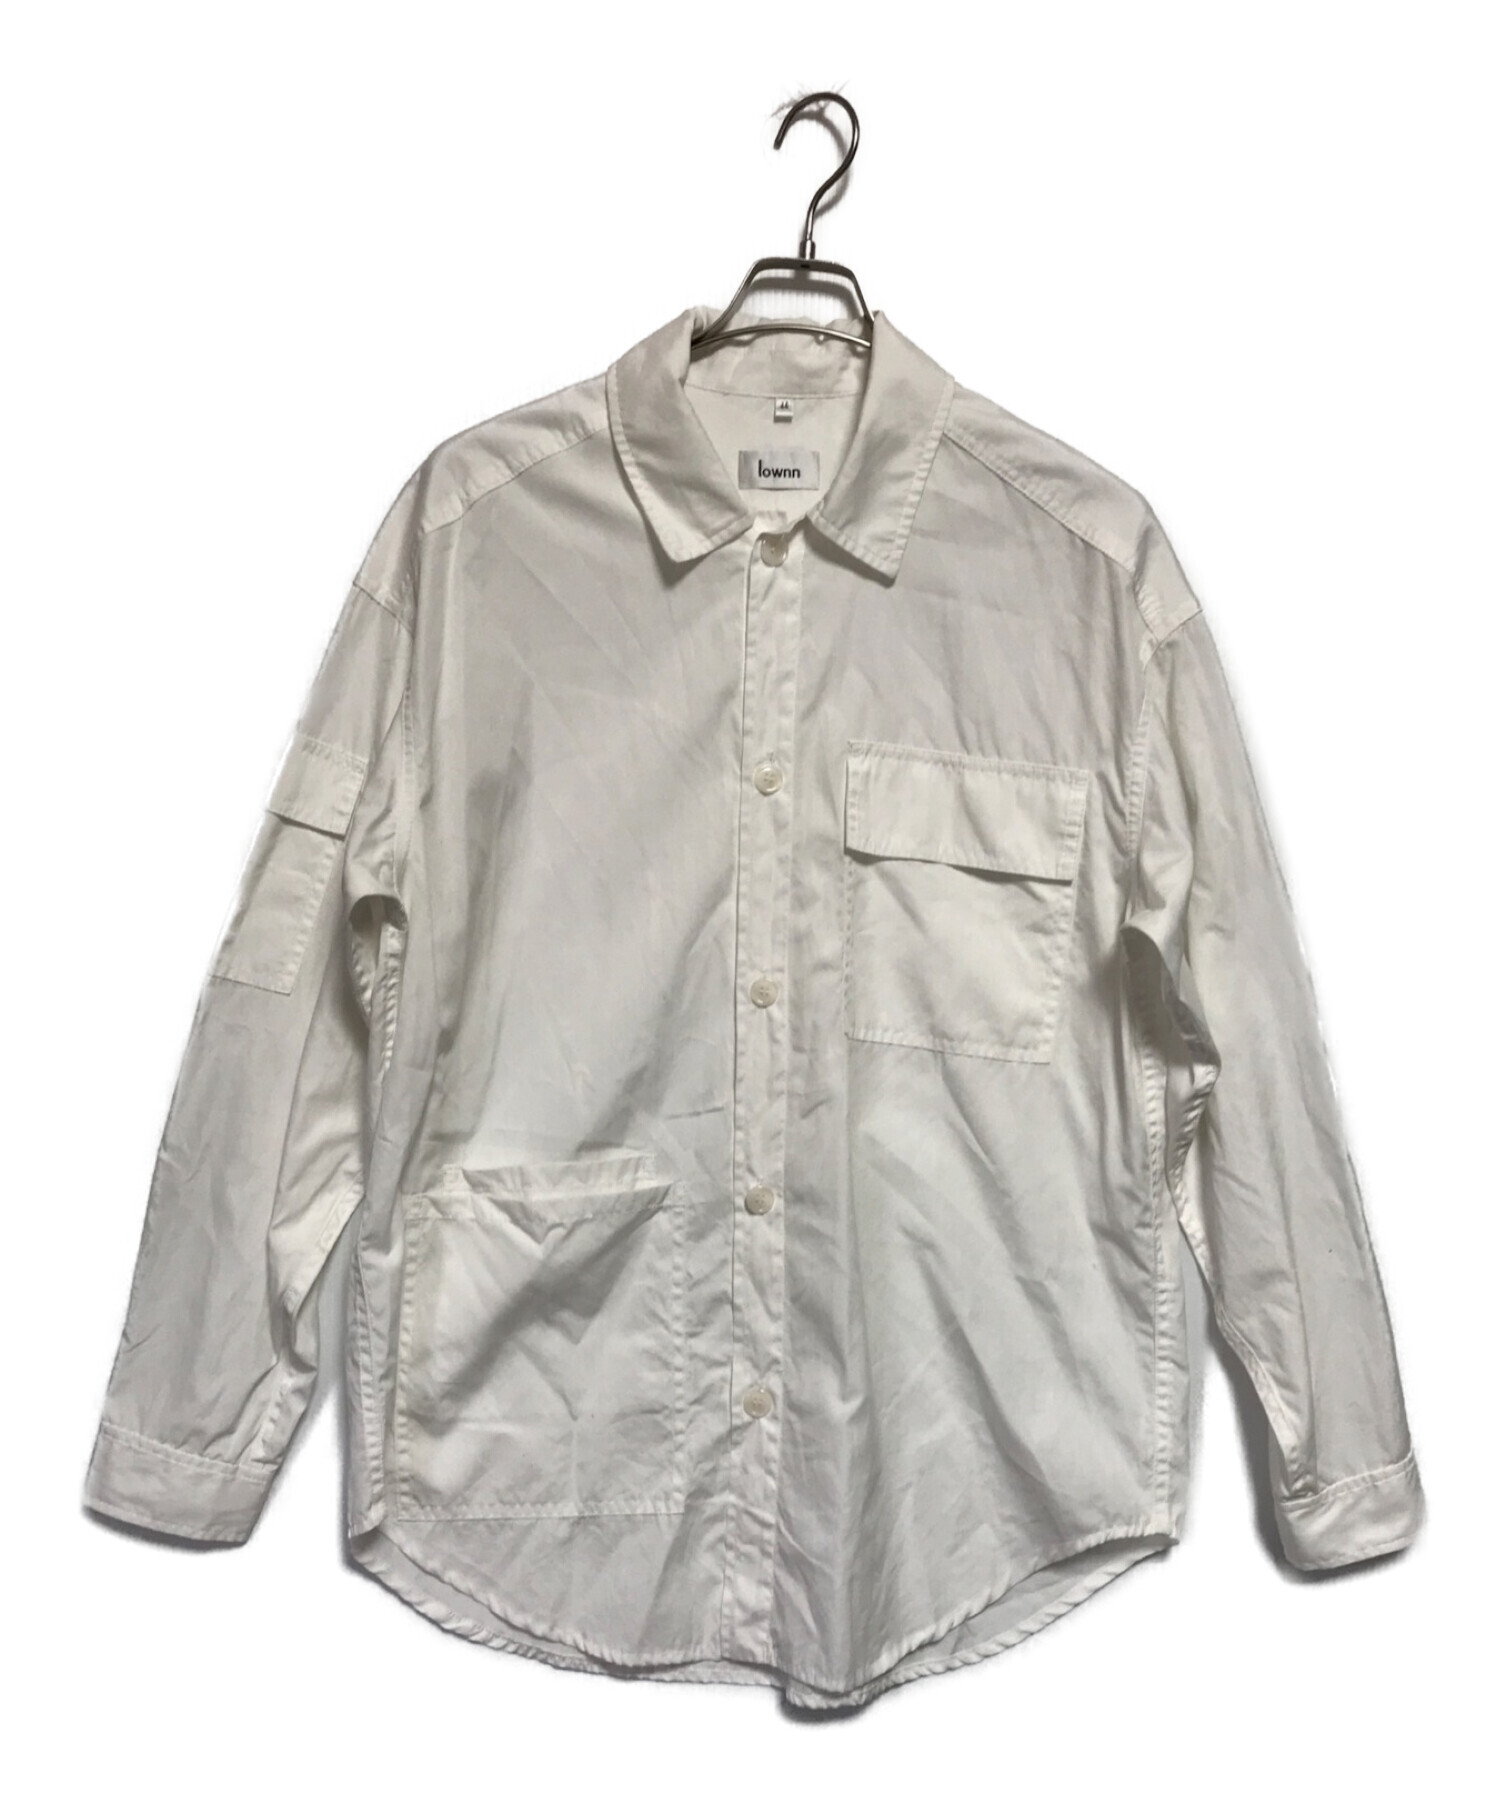 lownn (ローン) Utility Long shirt/ユーティリティロング ホワイト サイズ:44(下記参照)